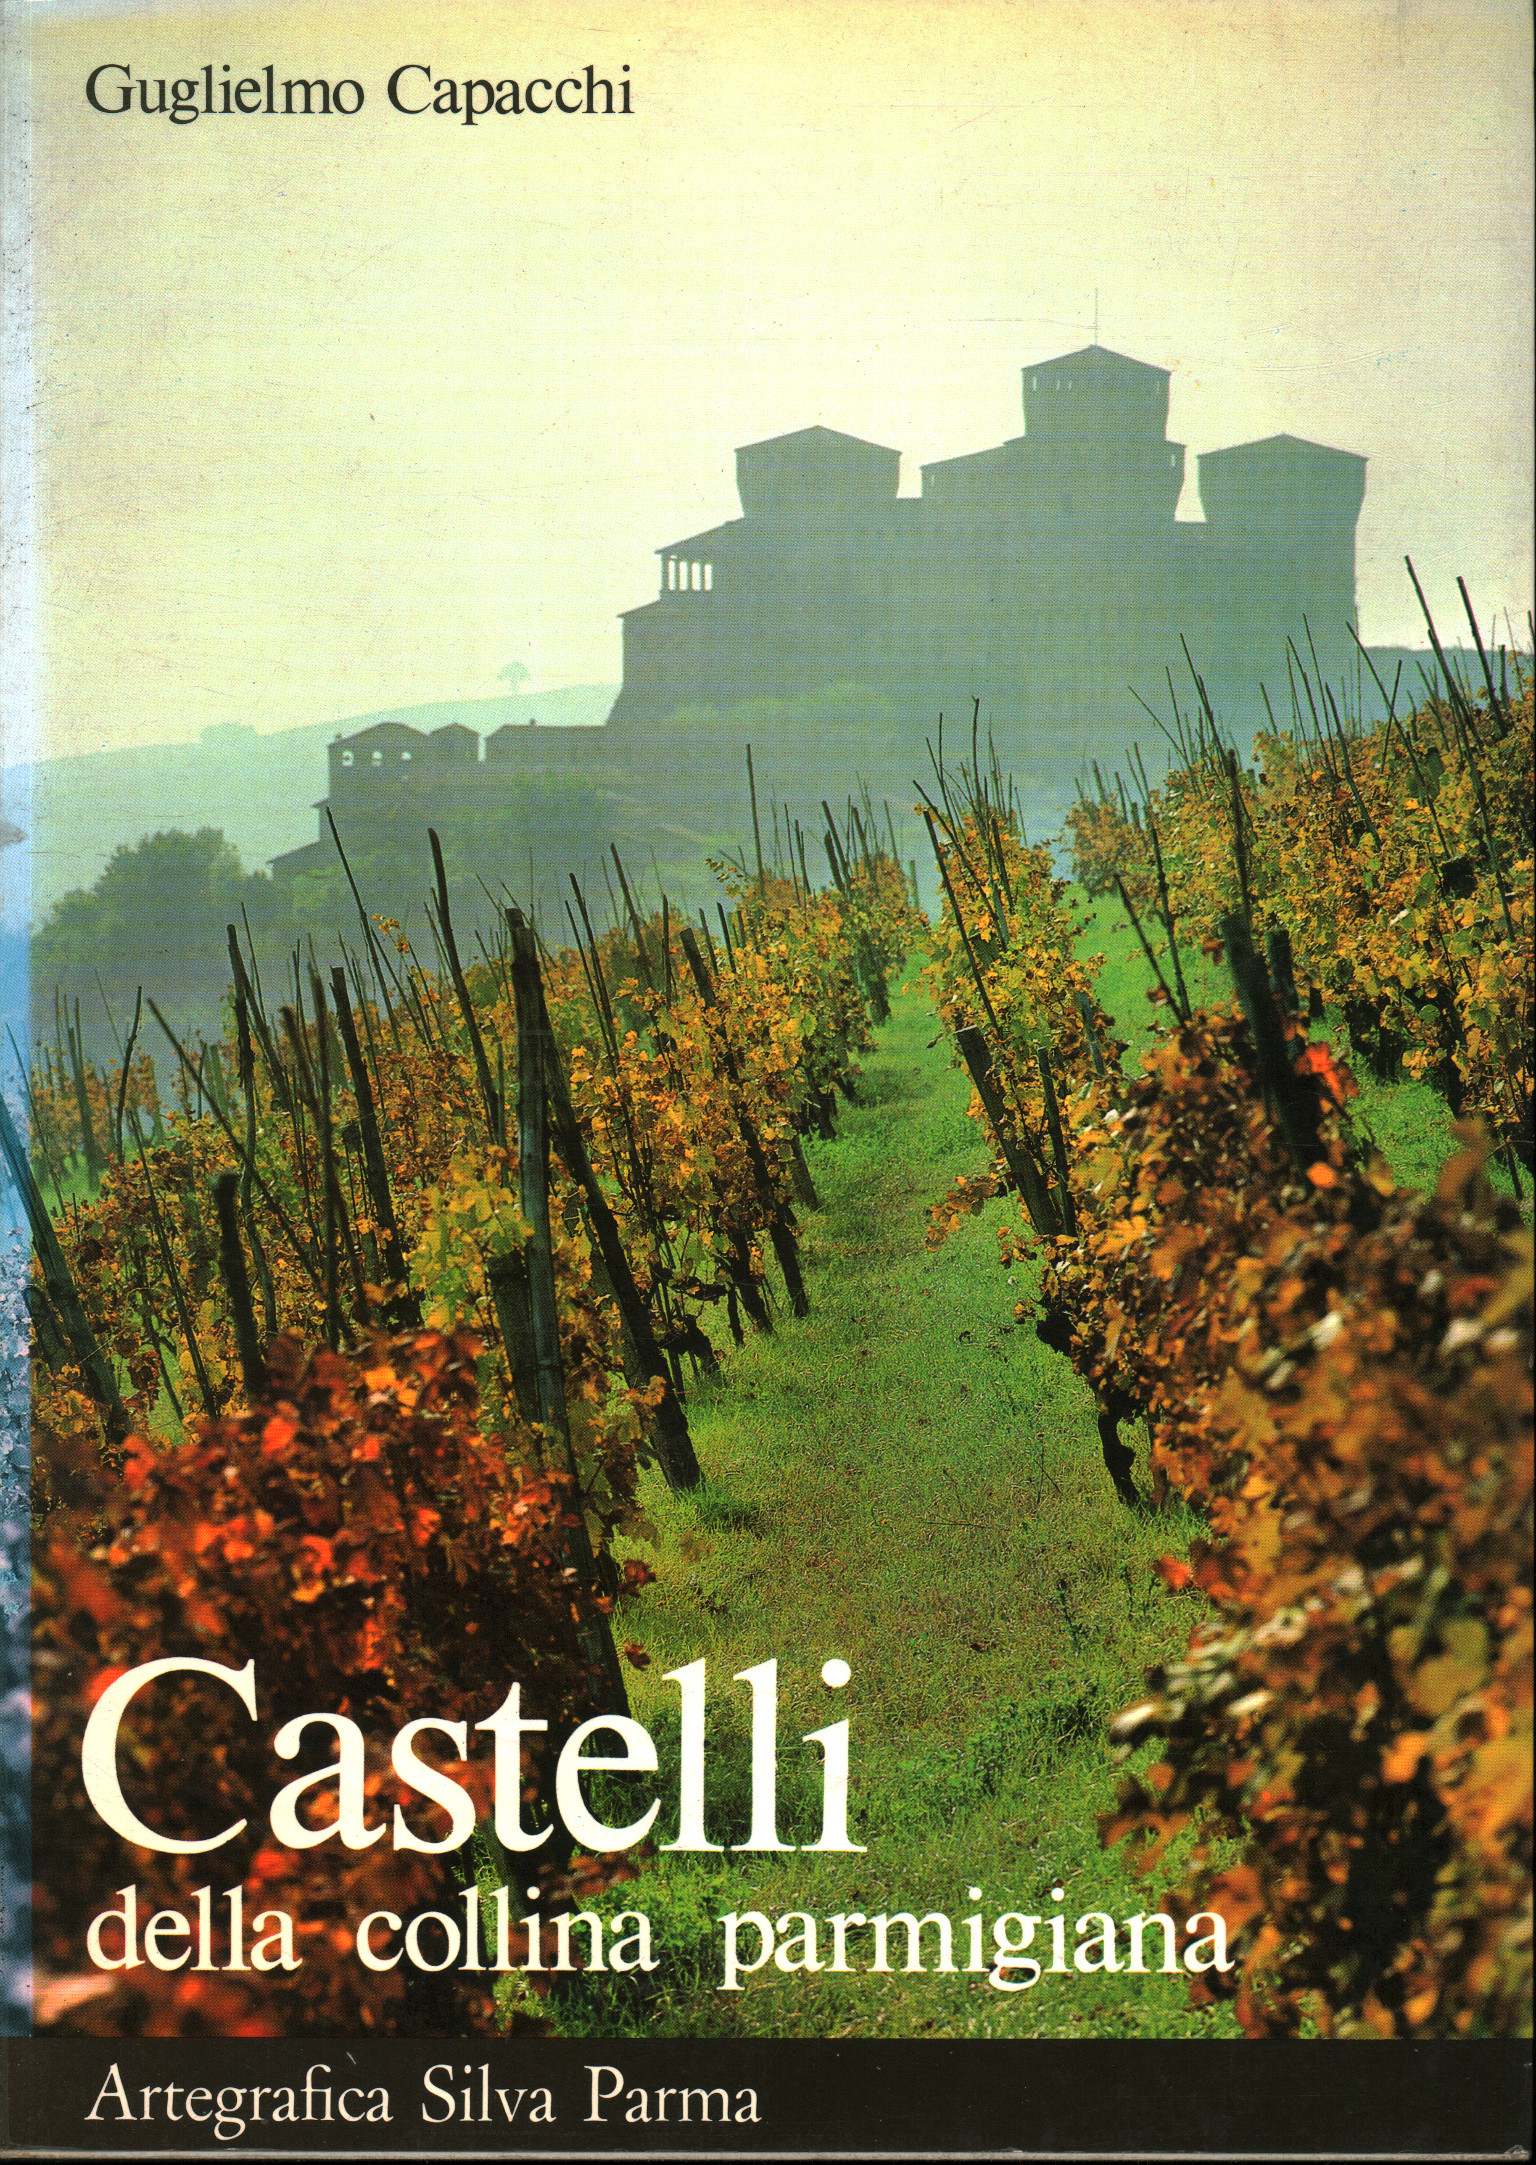 Castelli della collina parmigiana, Guglielmo Capacchi